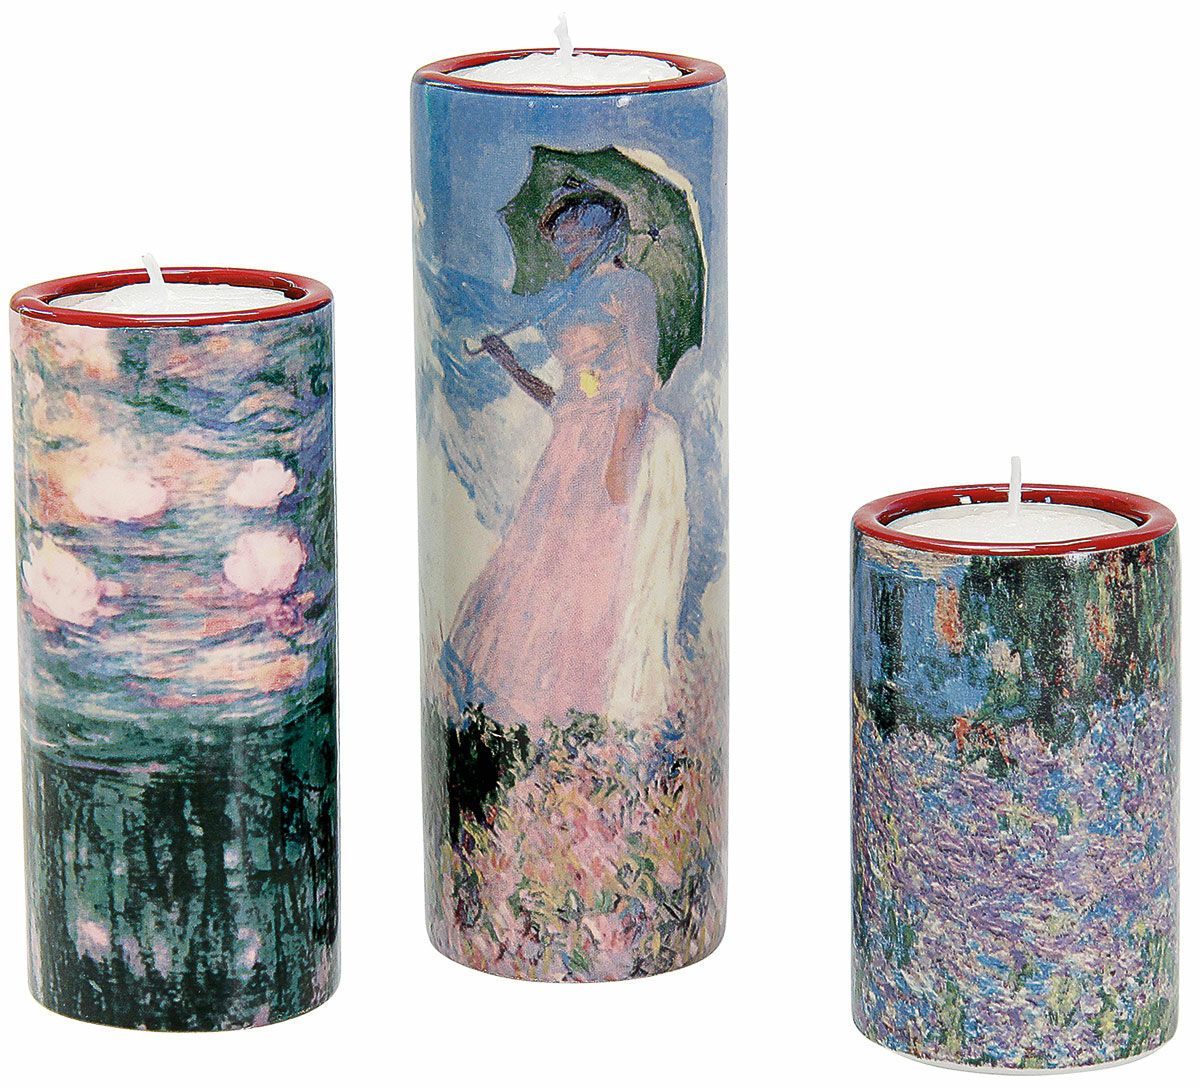 Sæt af 3 fyrfadsstager med kunstnermotiver, porcelæn von Claude Monet